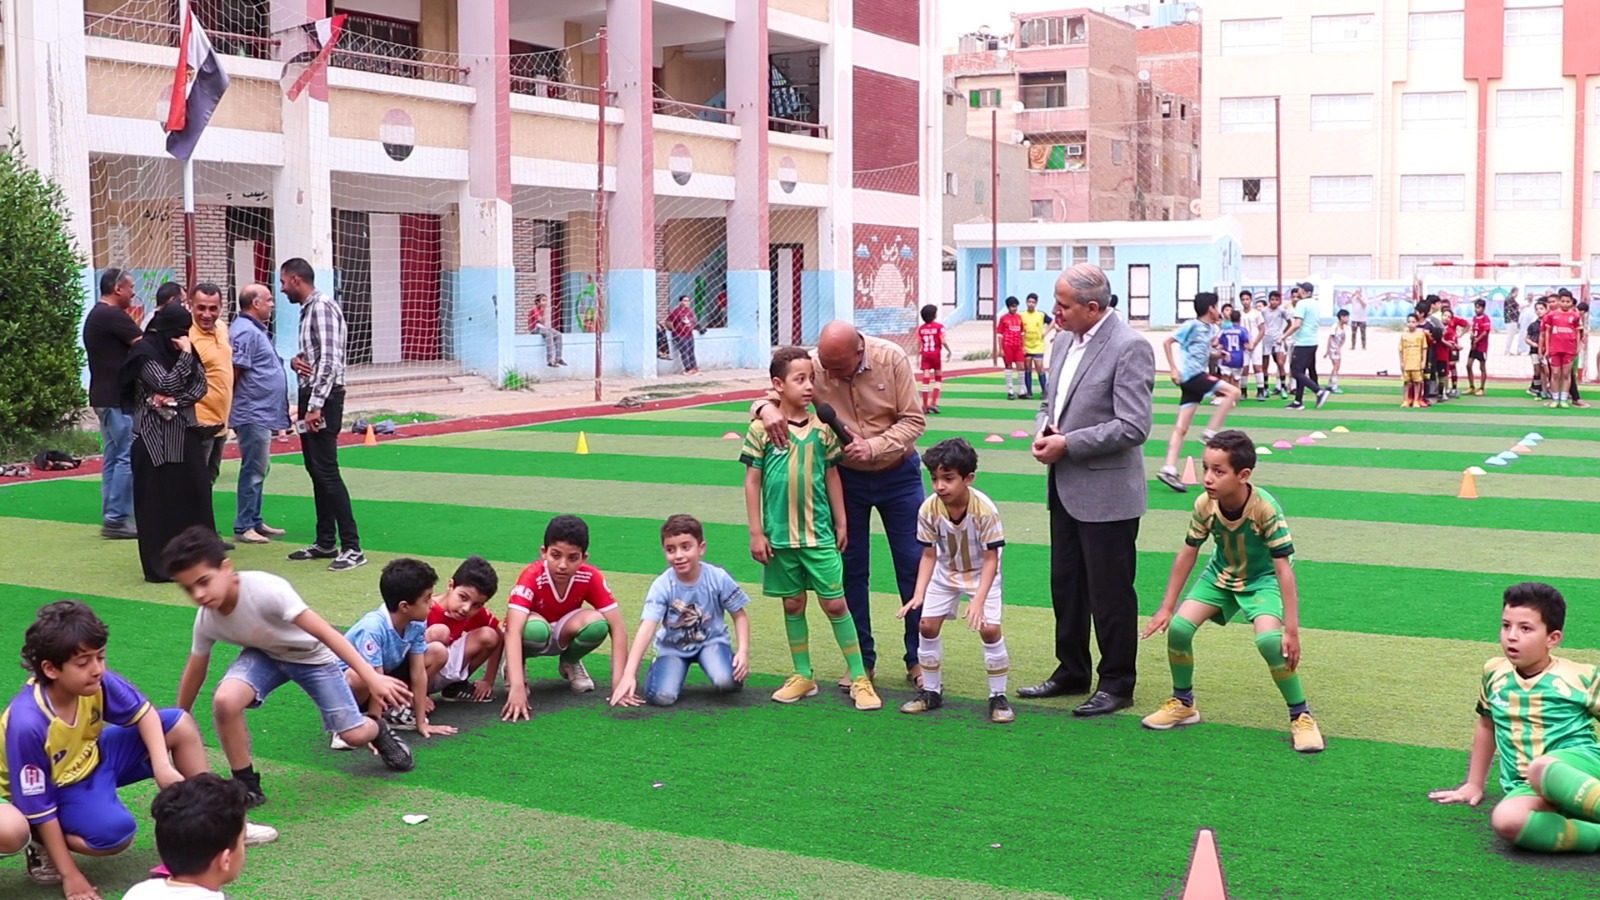 ثناء الاطفال على ممارستهم كرة القدم بمدرسة هدى شعراوي